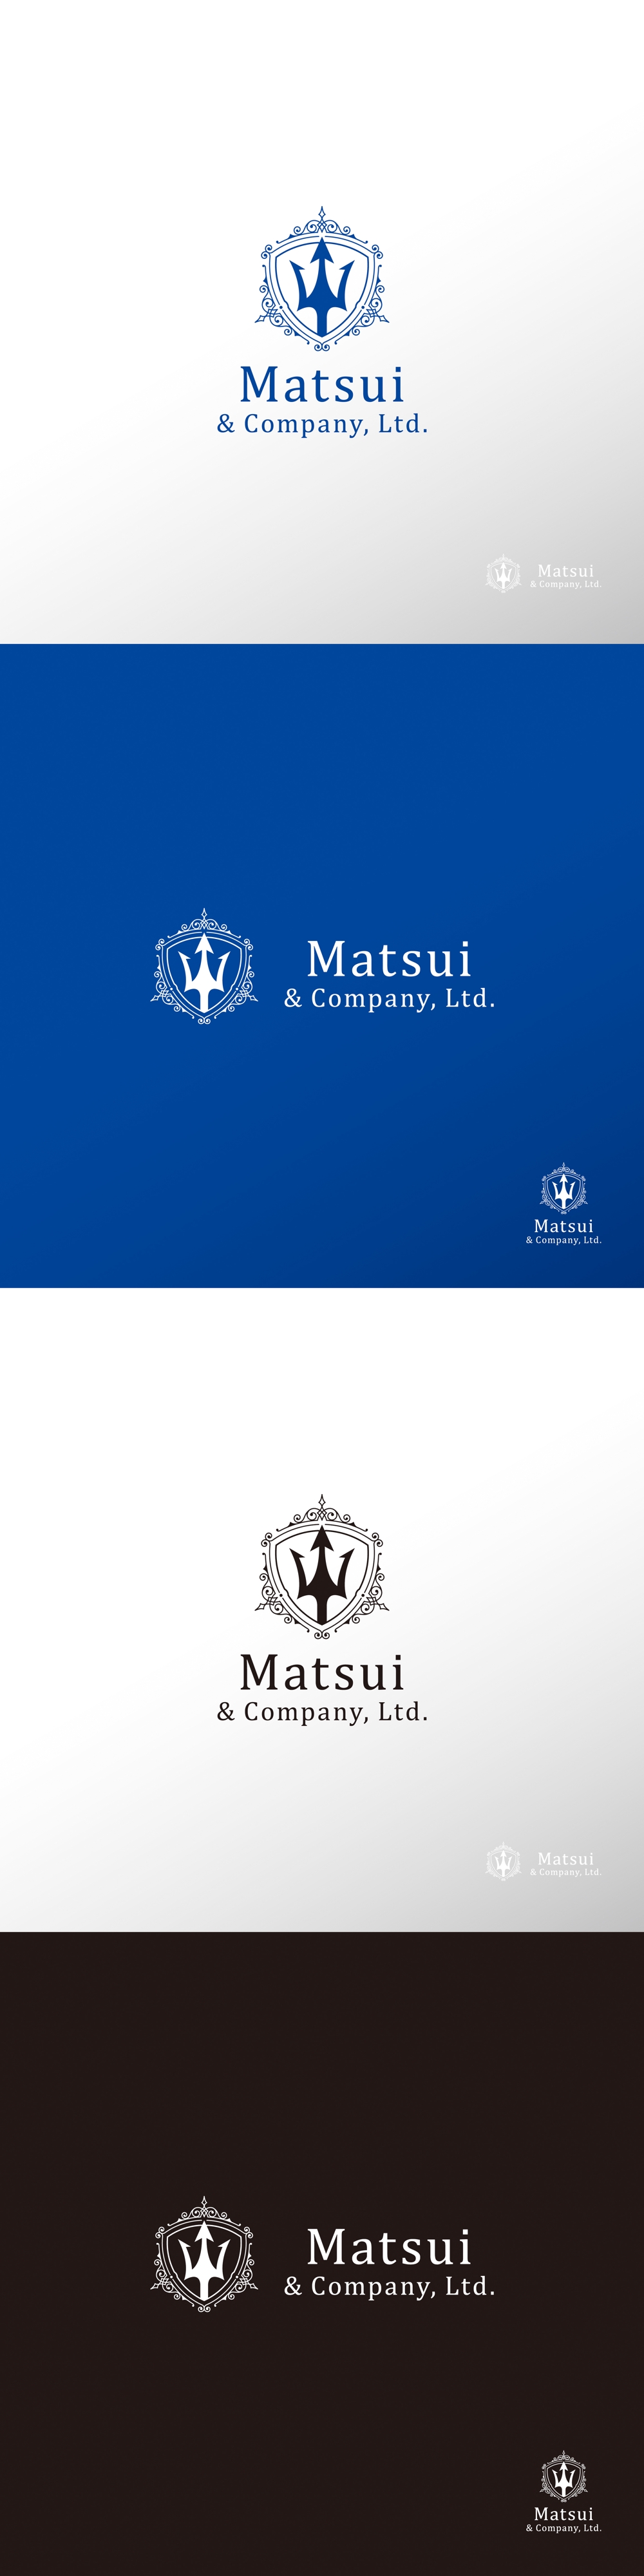 海運_Matsui & Company, Ltd._ロゴA1.jpg